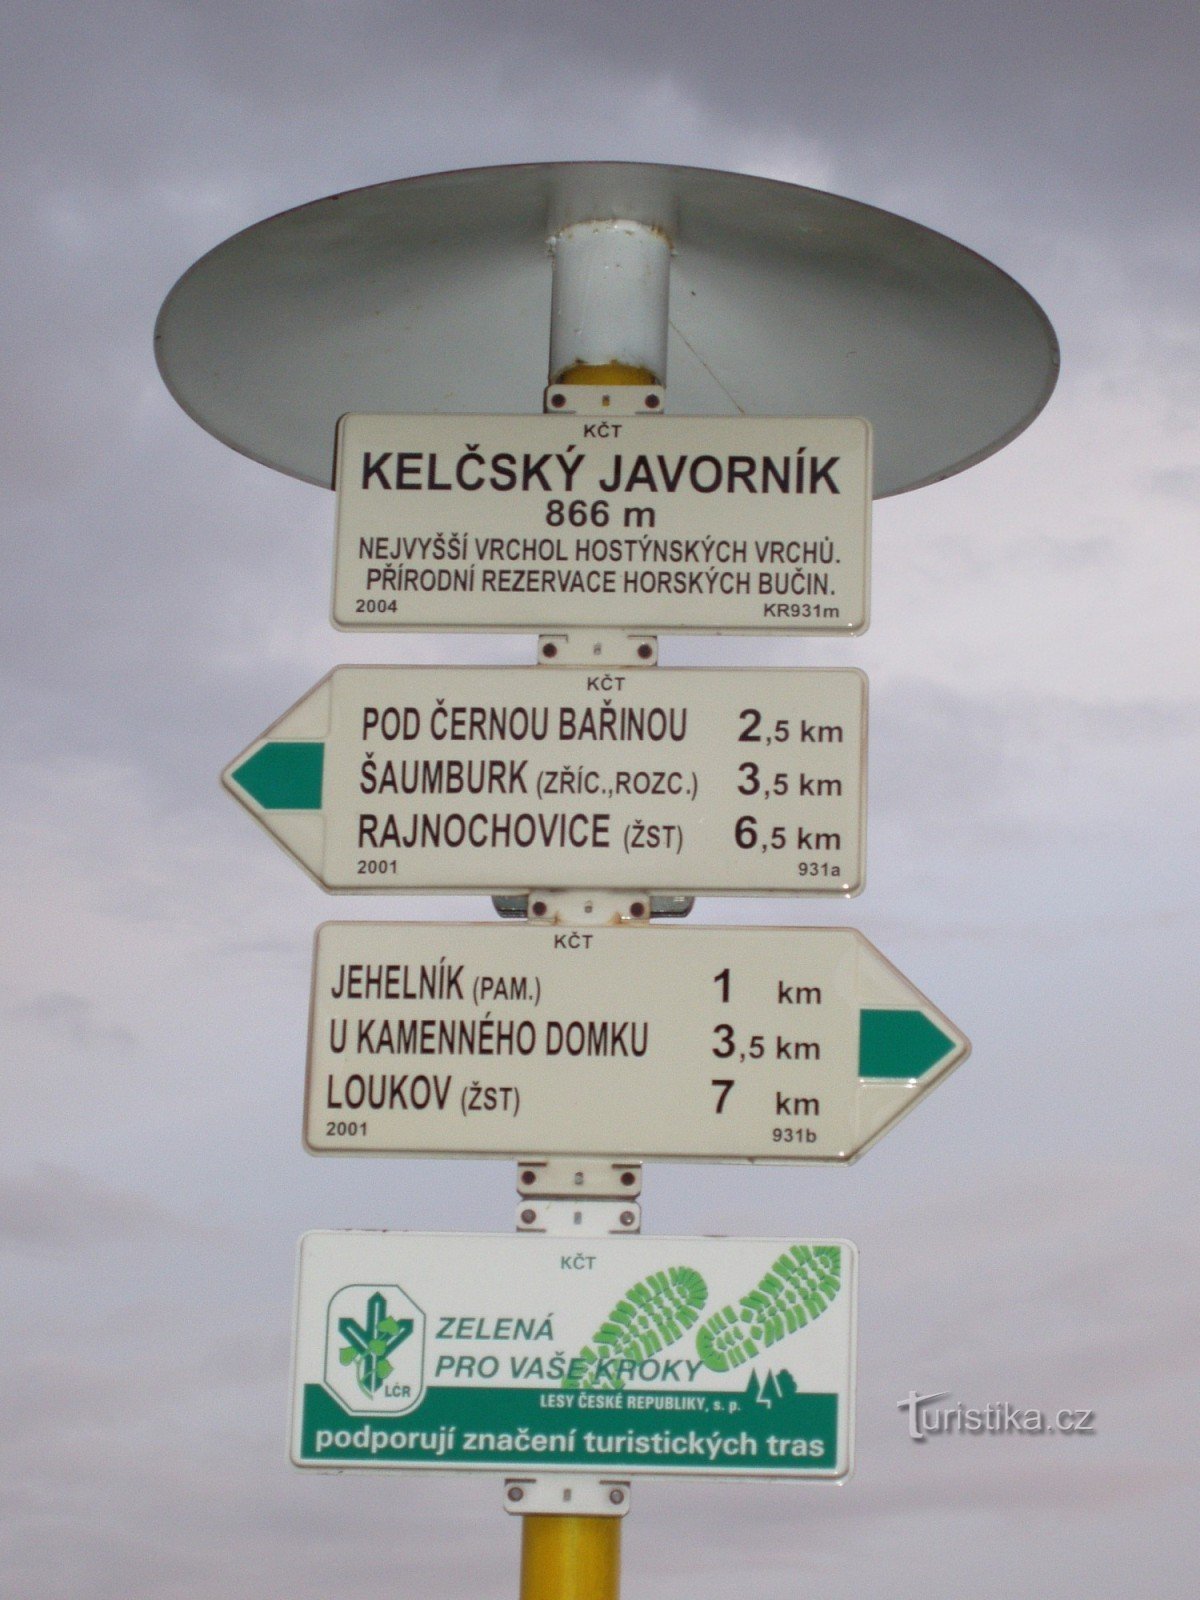 De Chvalčov à reserva natural Kelčský Javorník